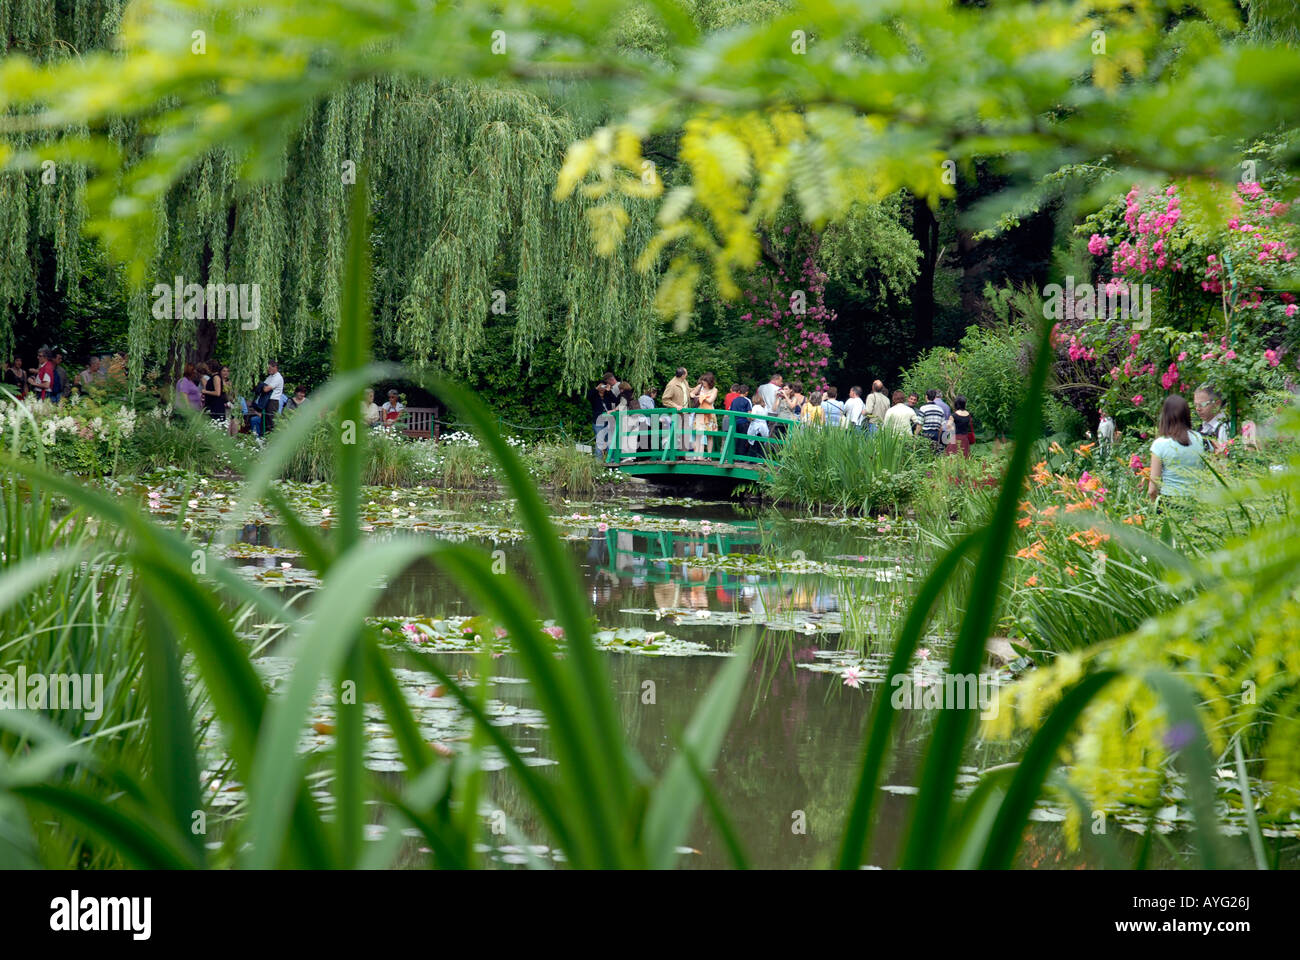 Jardin d'eau de Claude Monet peintre impressionniste français célèbre 18401926 Giverny Normandie France Banque D'Images